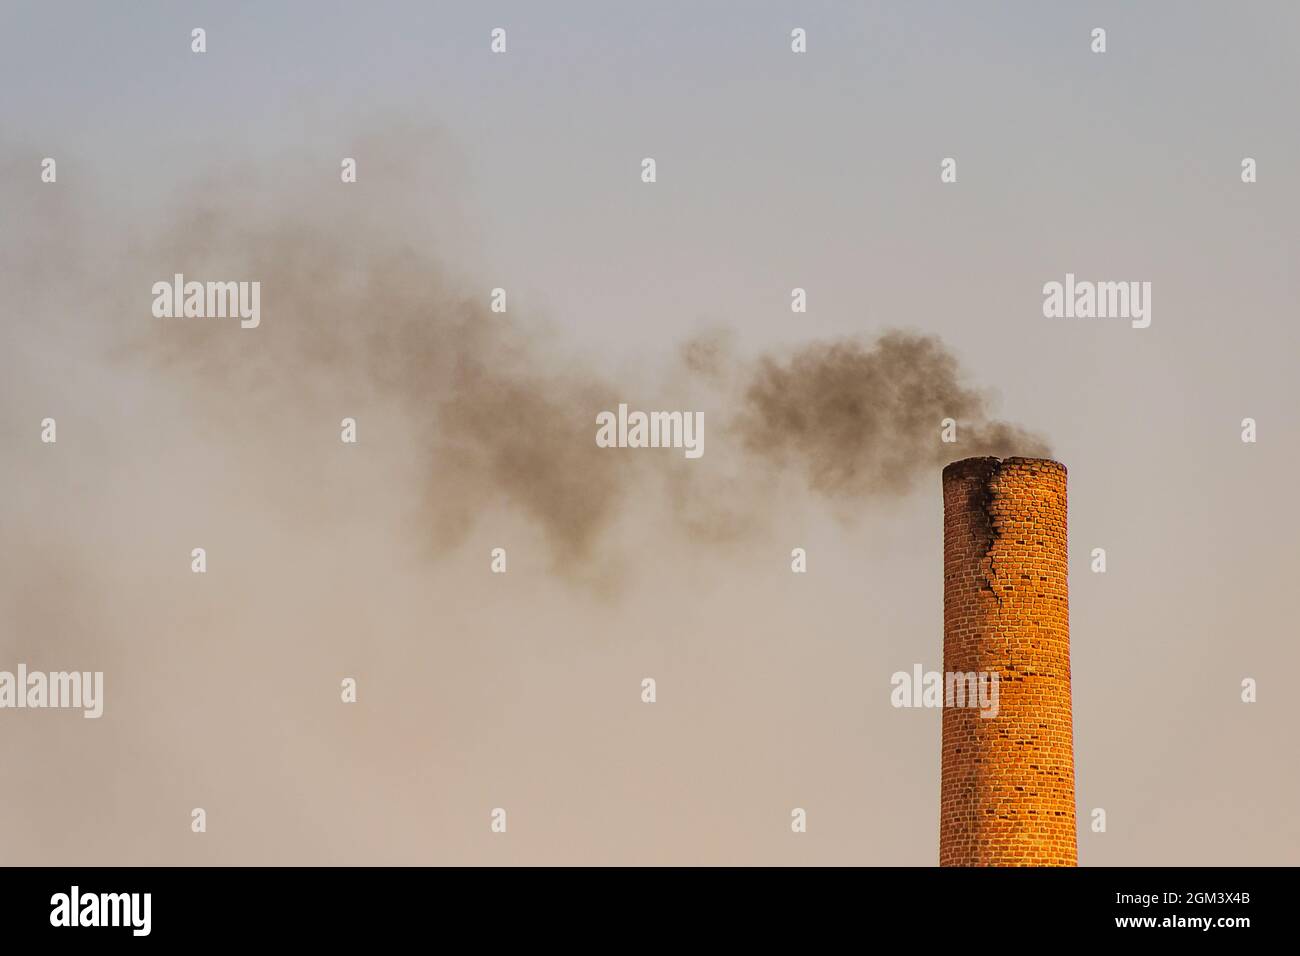 Cheminée industrielle émettant de la fumée noire et polluant l'environnement. Banque D'Images